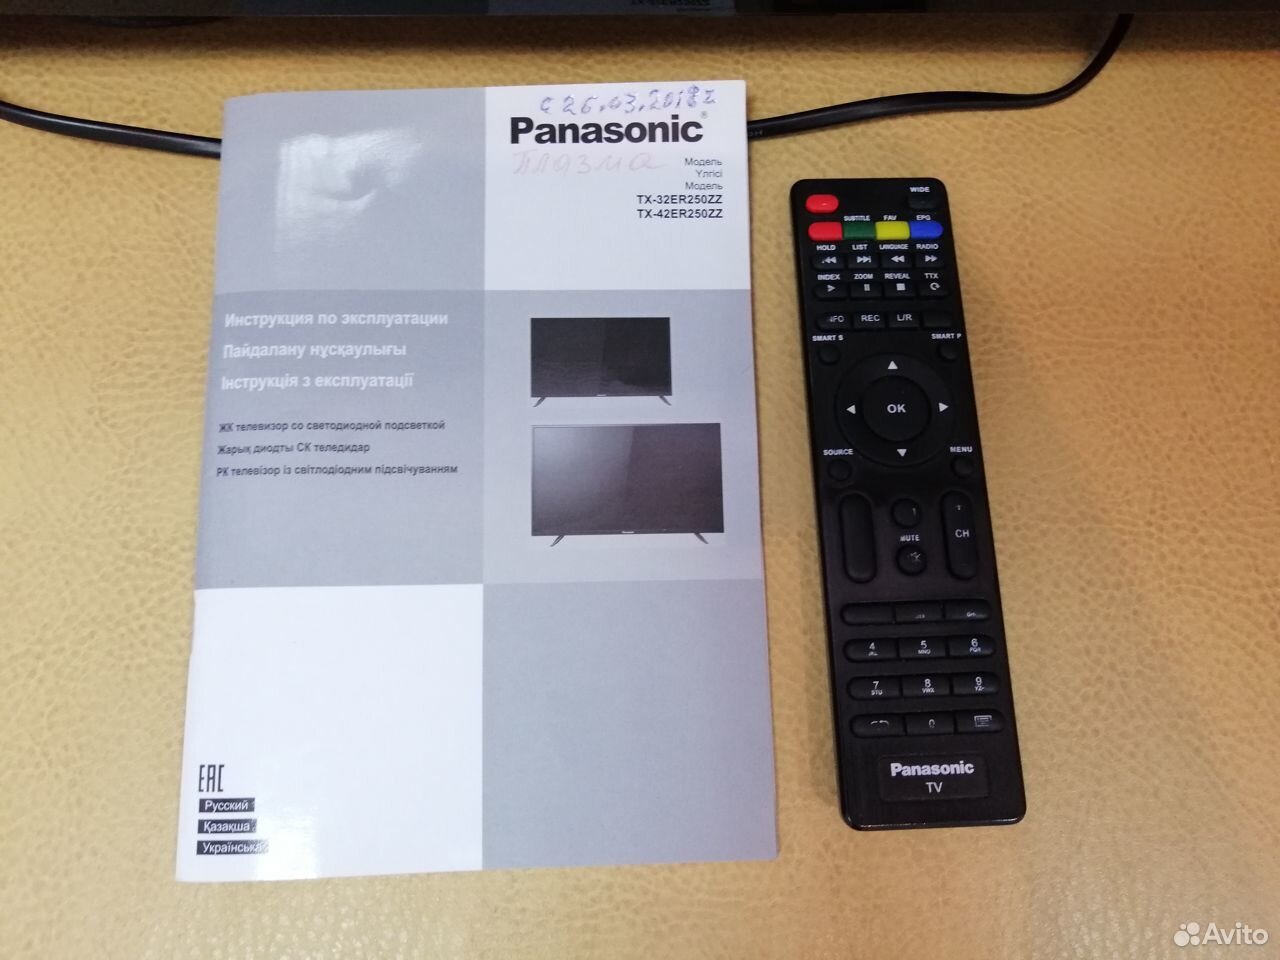  Телевизор Panasonic TX-32ER250  89528888848 купить 4